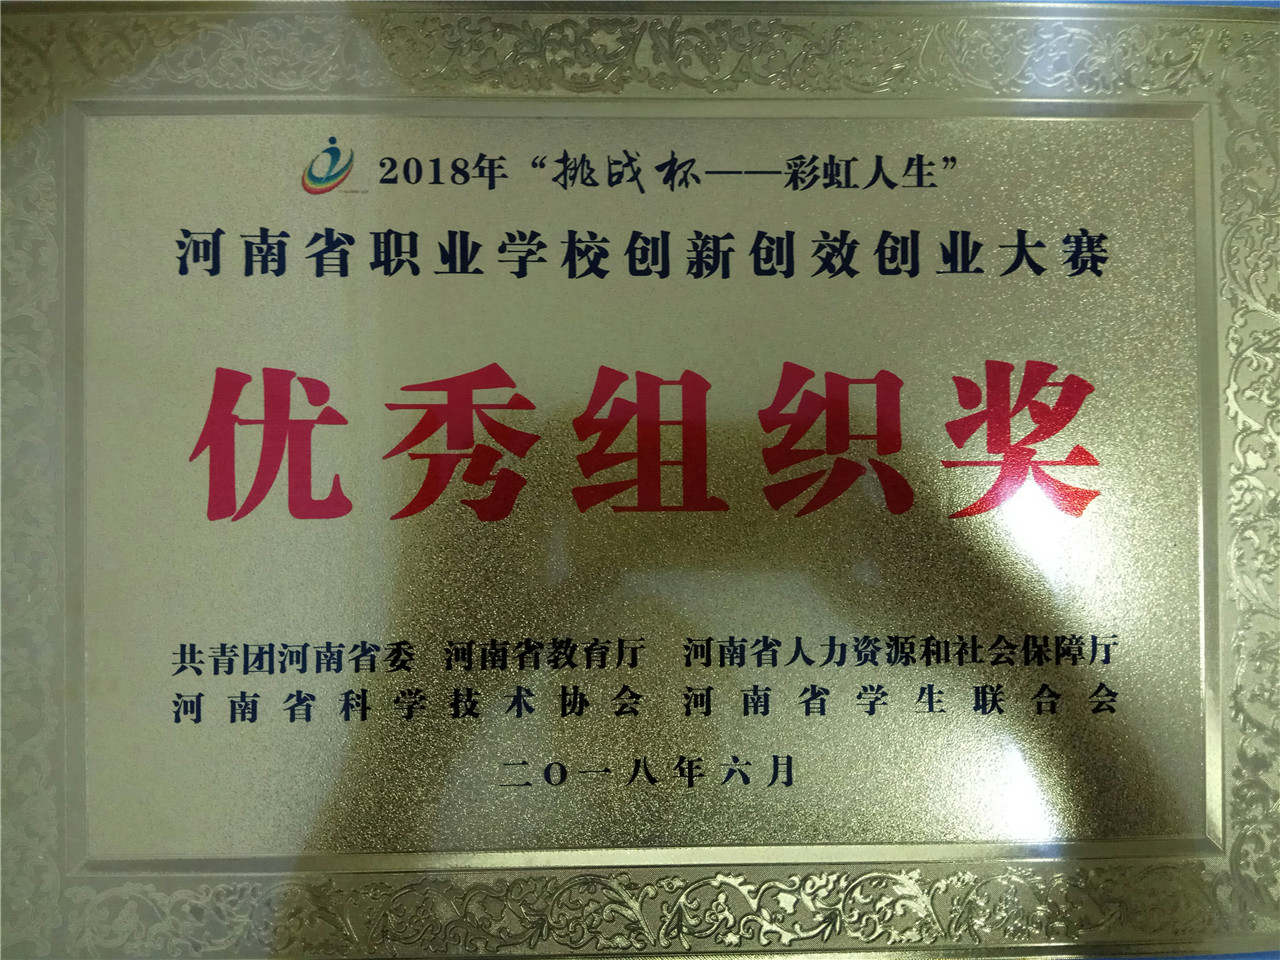 荣获河南省职业学校创新创校创业大赛“优秀组织奖”